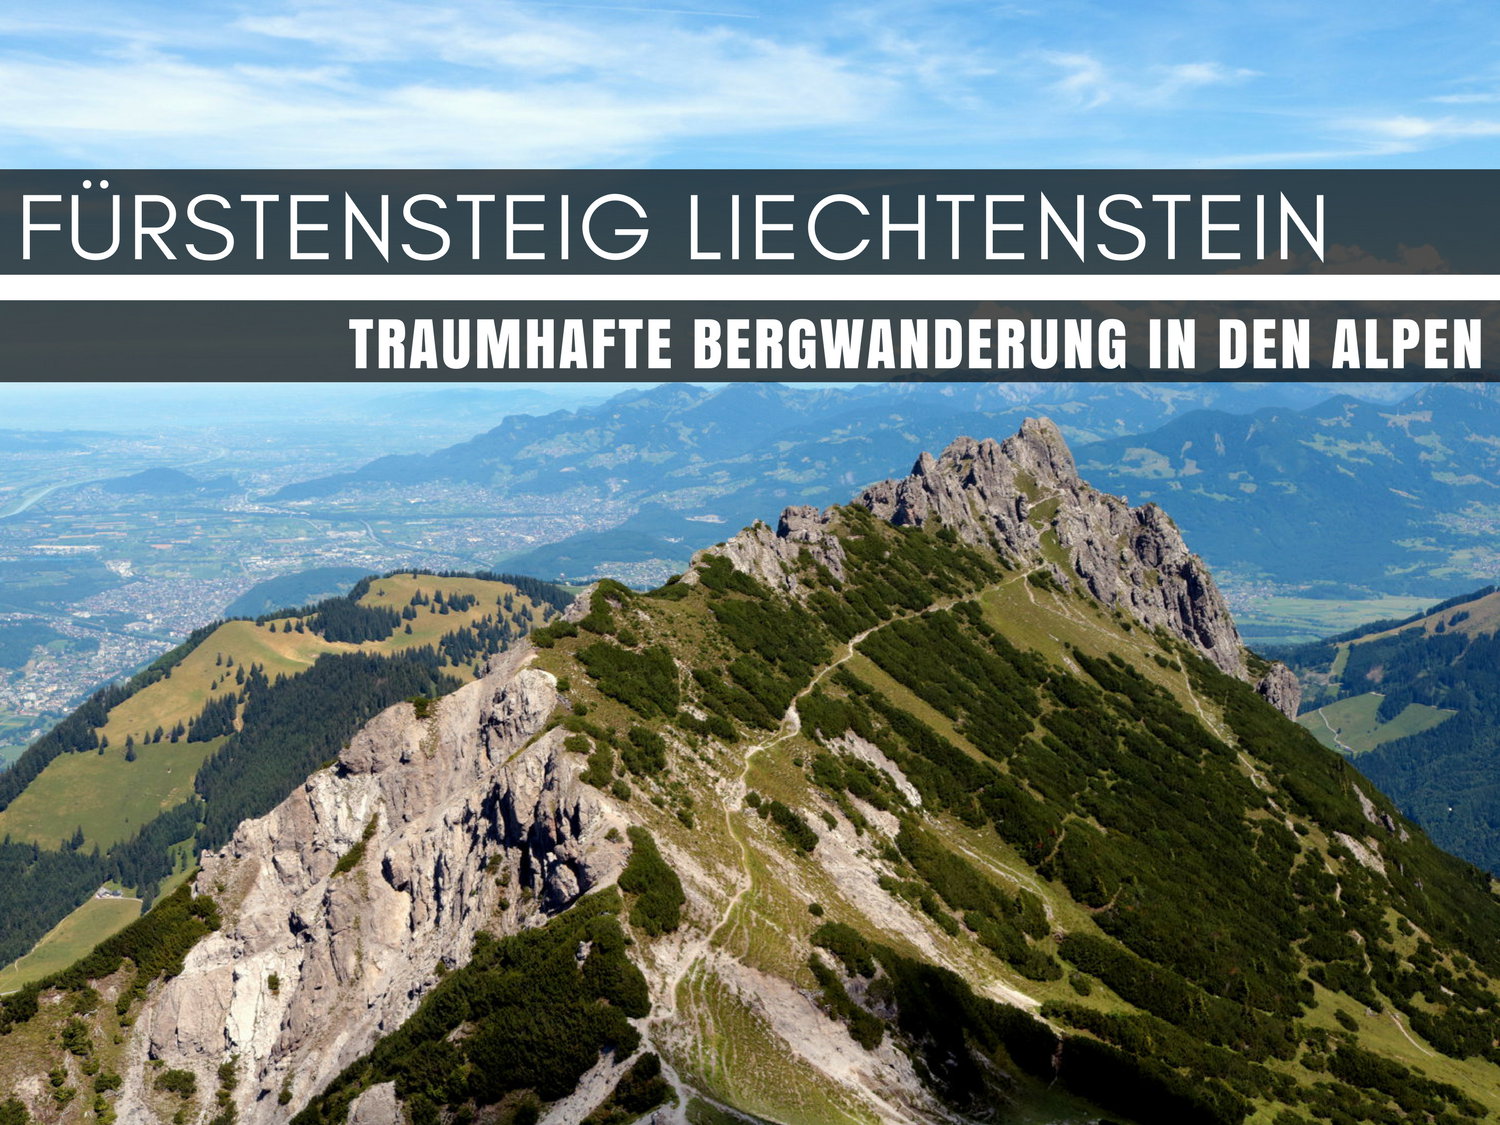 Fürstensteig Liechtenstein